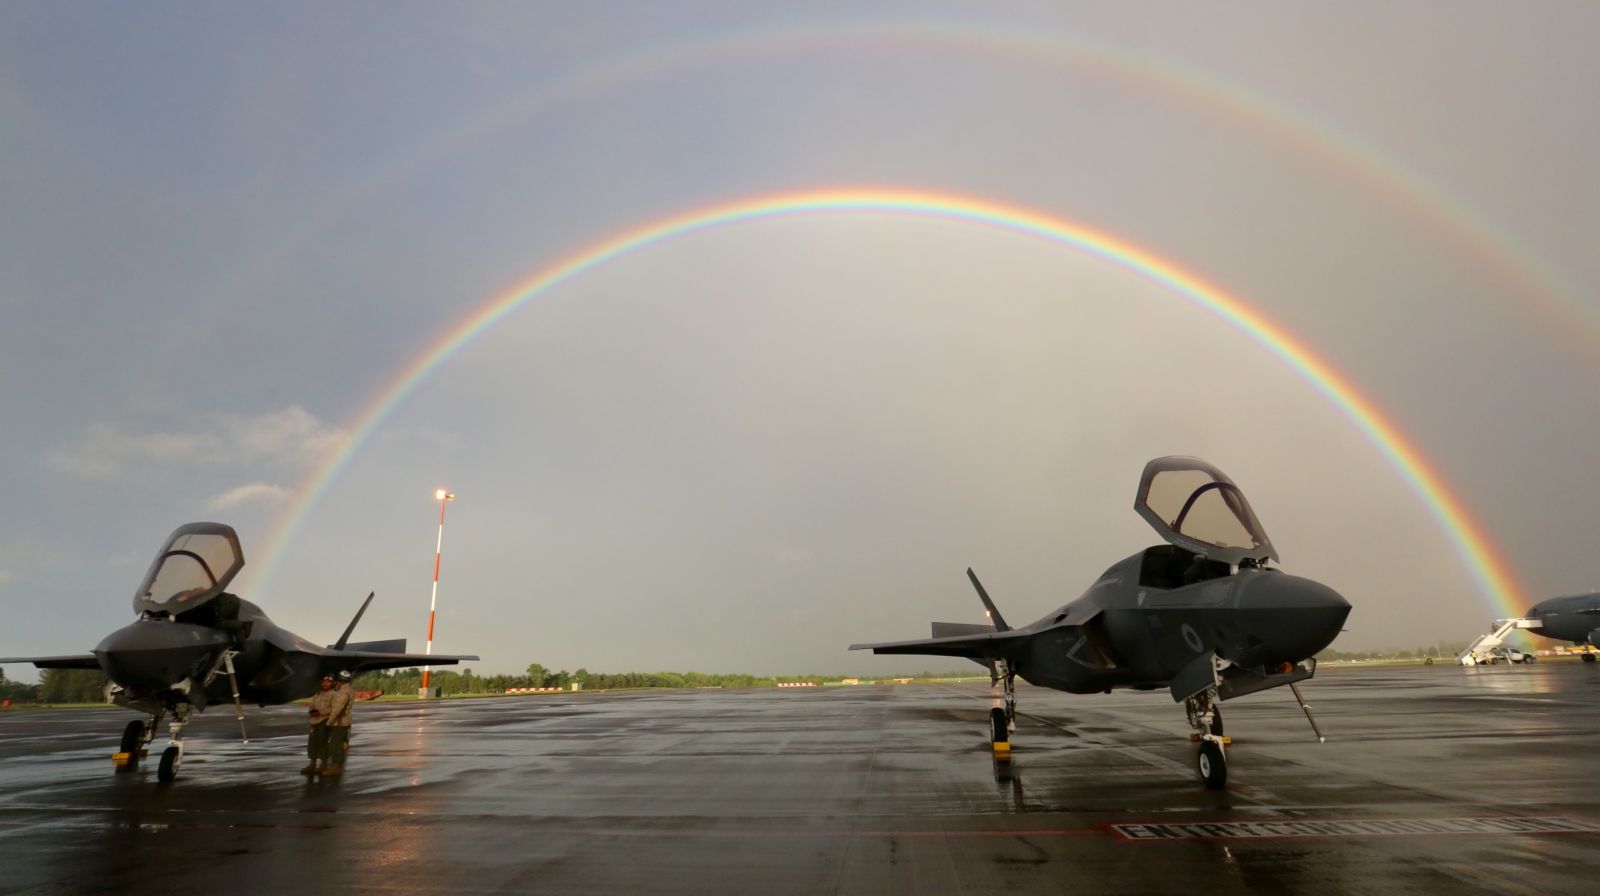 Pogoda była typowo angielska, ale dzięki temu myśliwce powitała w Fairford, jak mawiał klasyk, „double rainbow all the way across the sky”. (fot. Sergeant Ross Tilly, MOD News Licence)